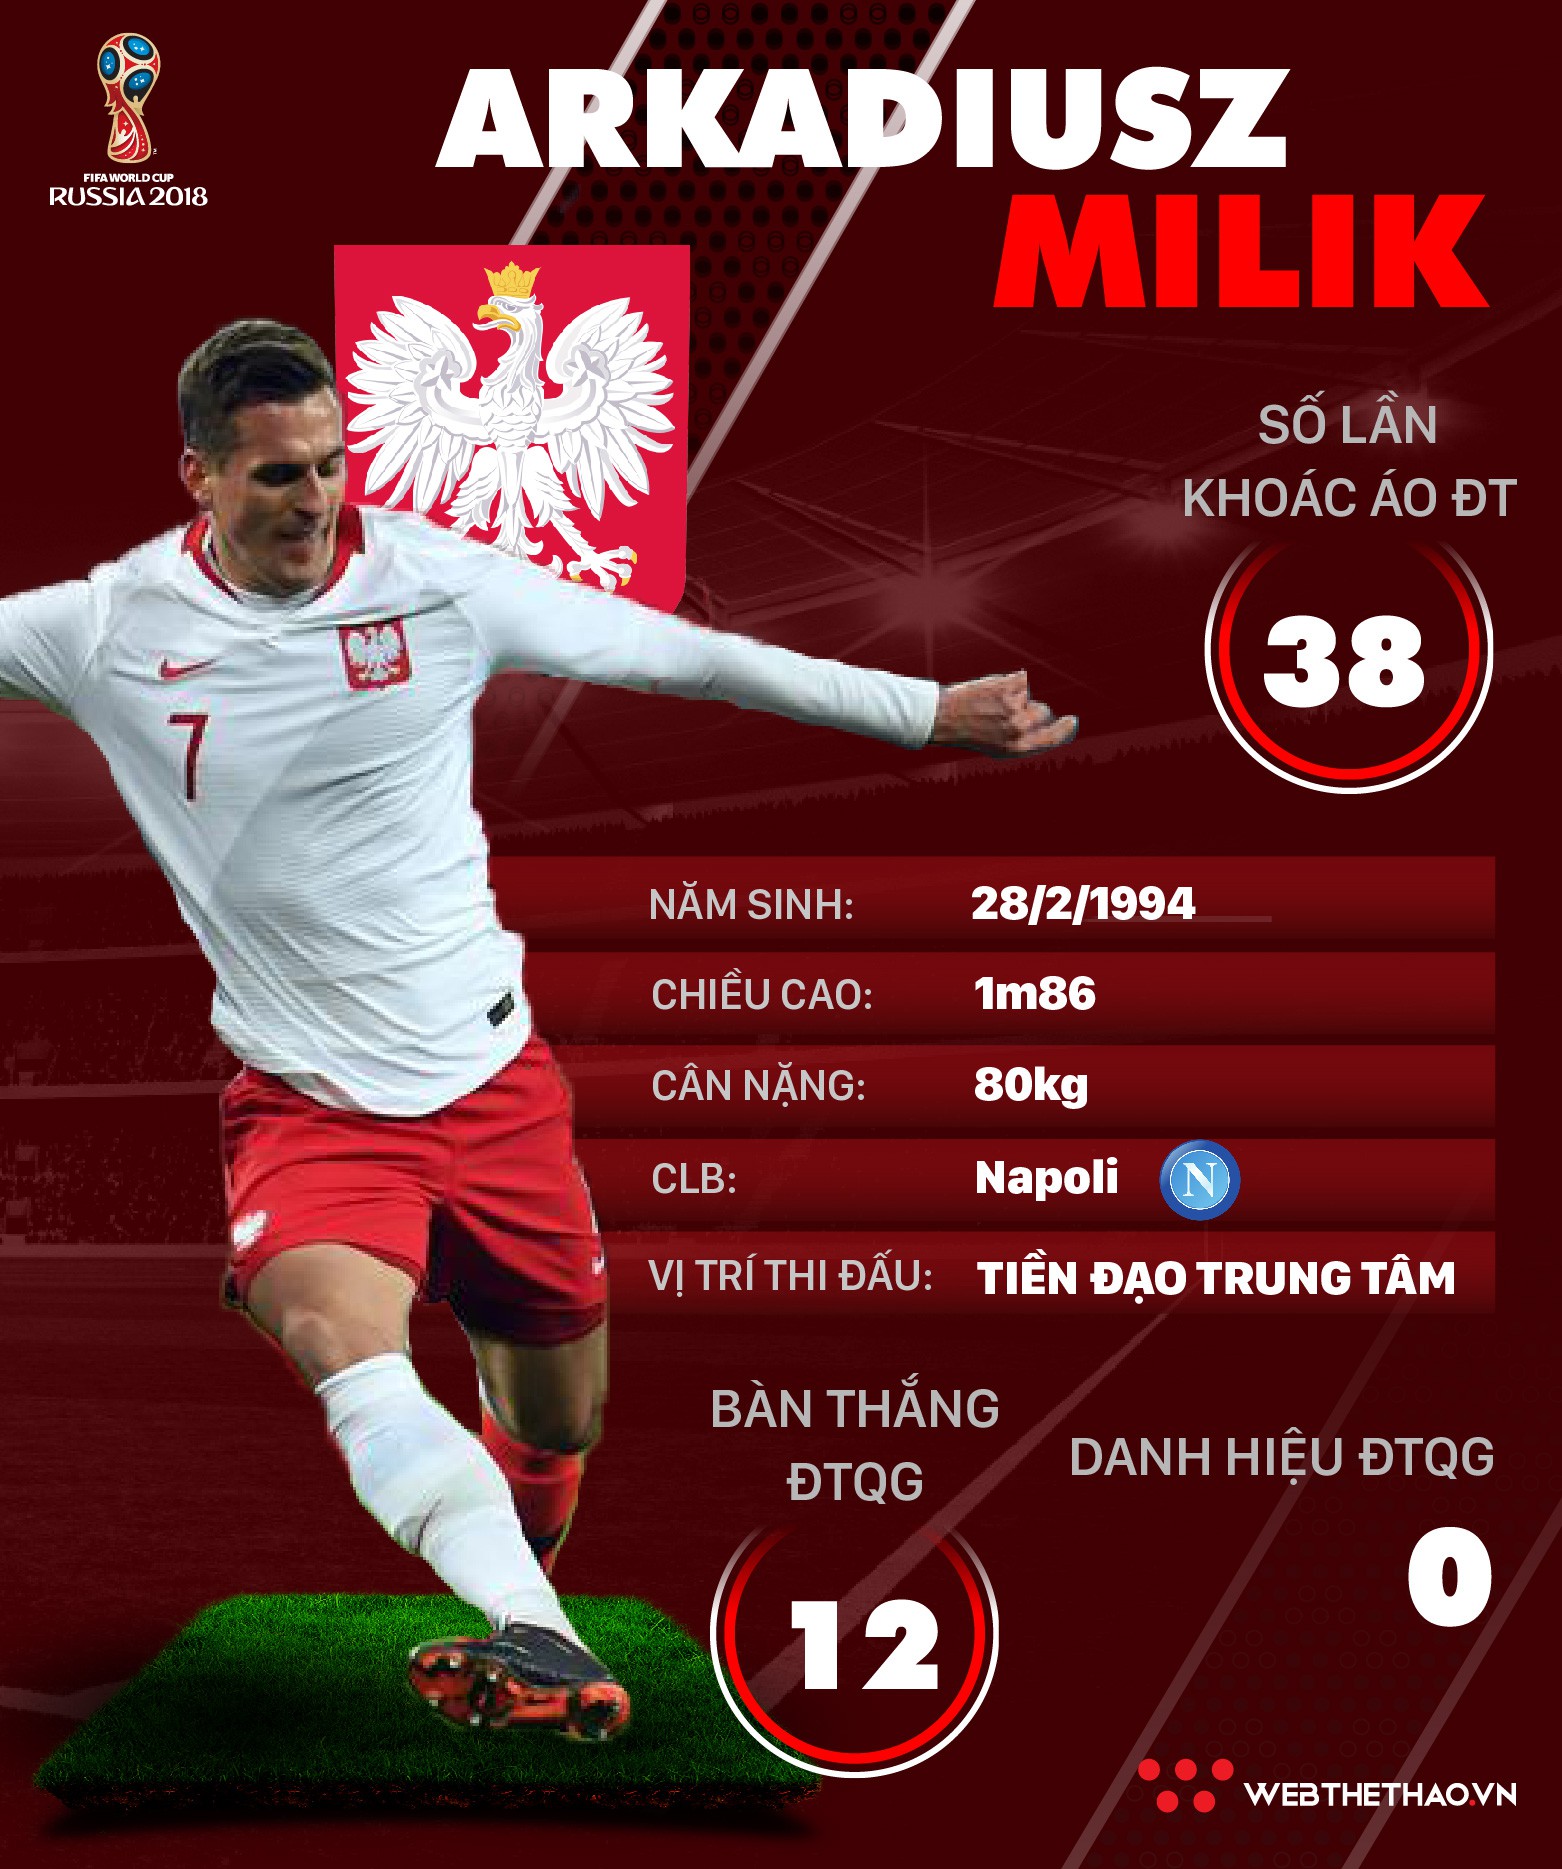 Thông tin cầu thủ Arkadiusz Milik của ĐT Ba Lan dự World Cup 2018 - Ảnh 1.